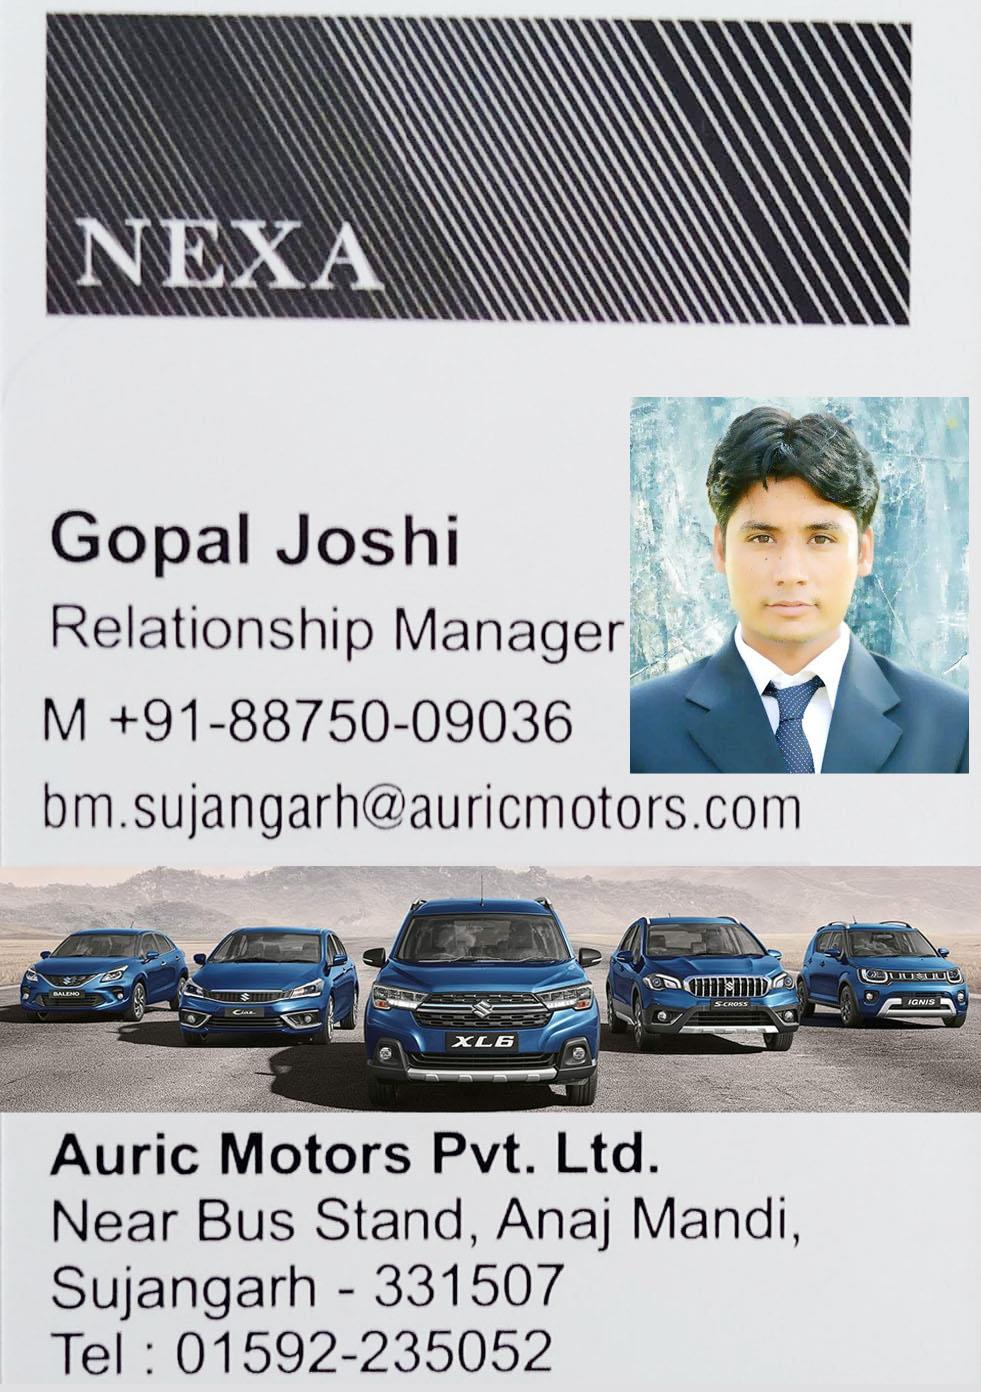 Nexa Maruti Suzuki (Auric Motors), Sujangarh (Churu)